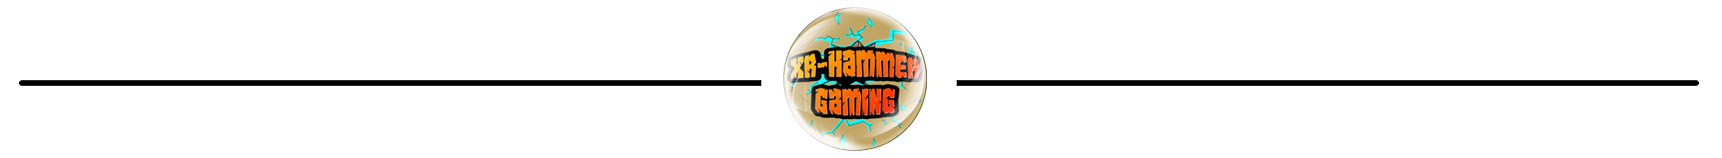 xrhammer banner.png